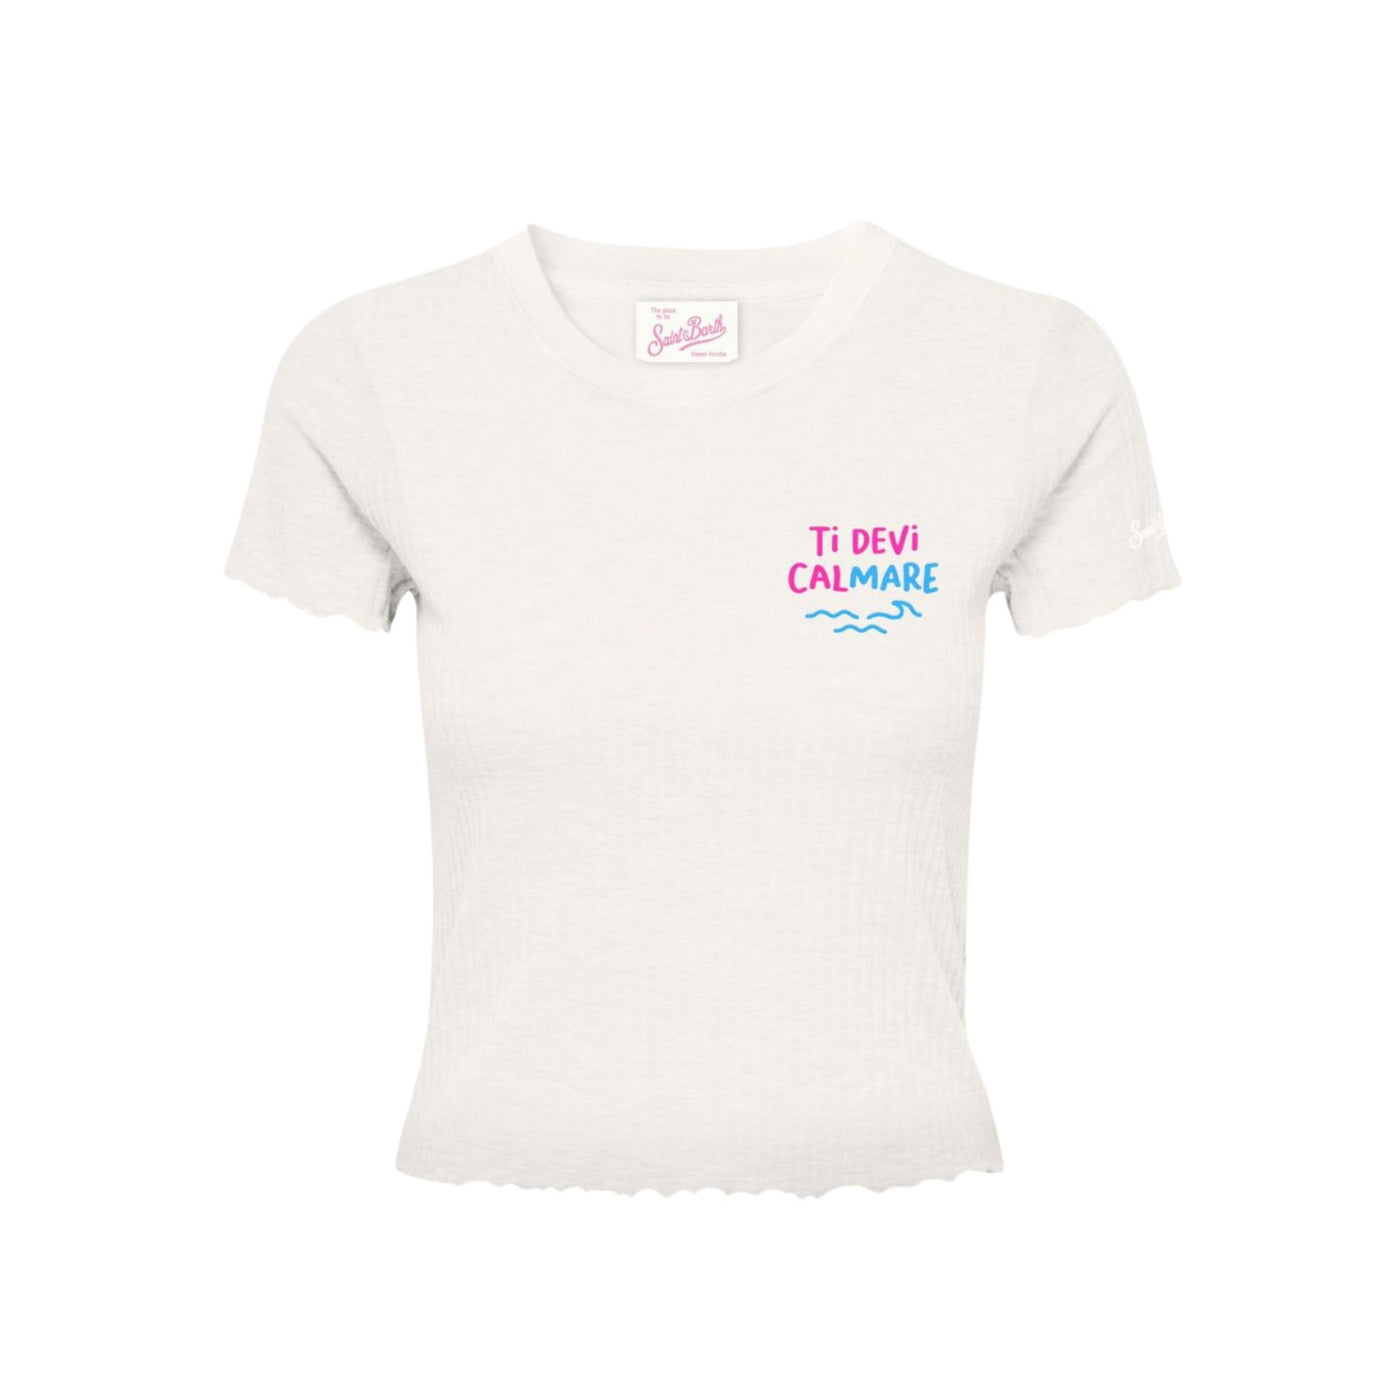 T-shirt Donna in morbido cotone tinta unita con bordi arricciati